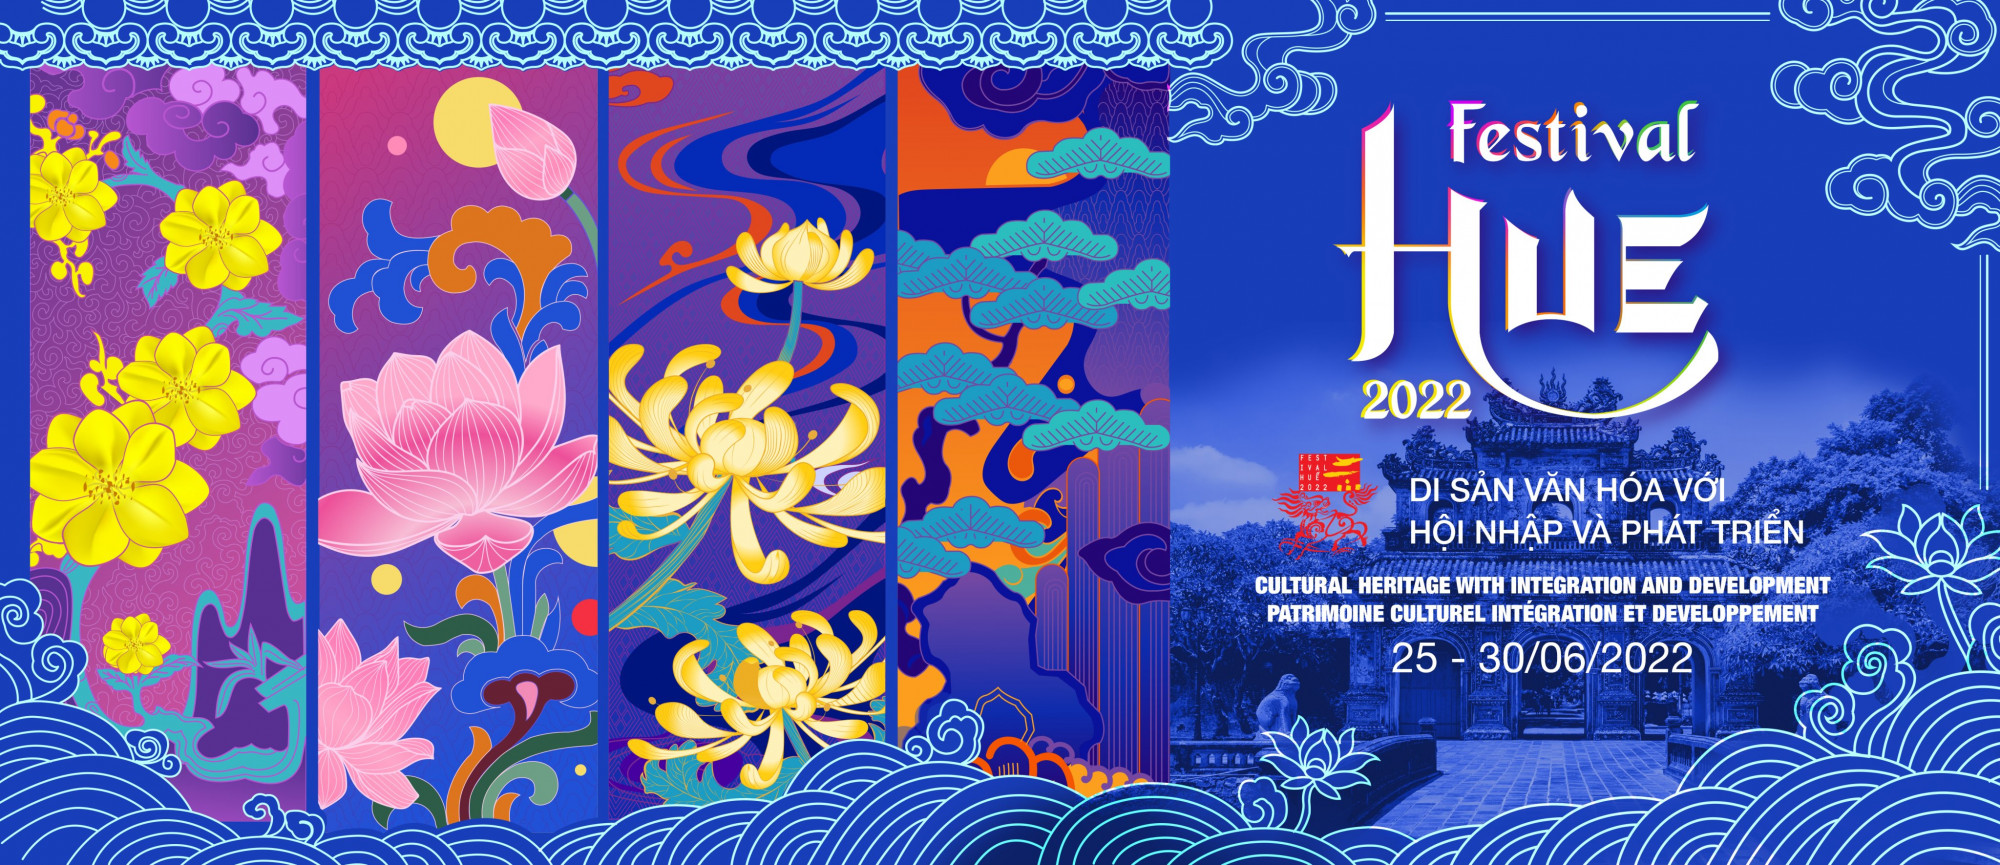  Bộ nhận diện Festival Huế 2022 với 4 hình ảnh chru đạo gồm Mai - Sen - Cúc - Tùng 